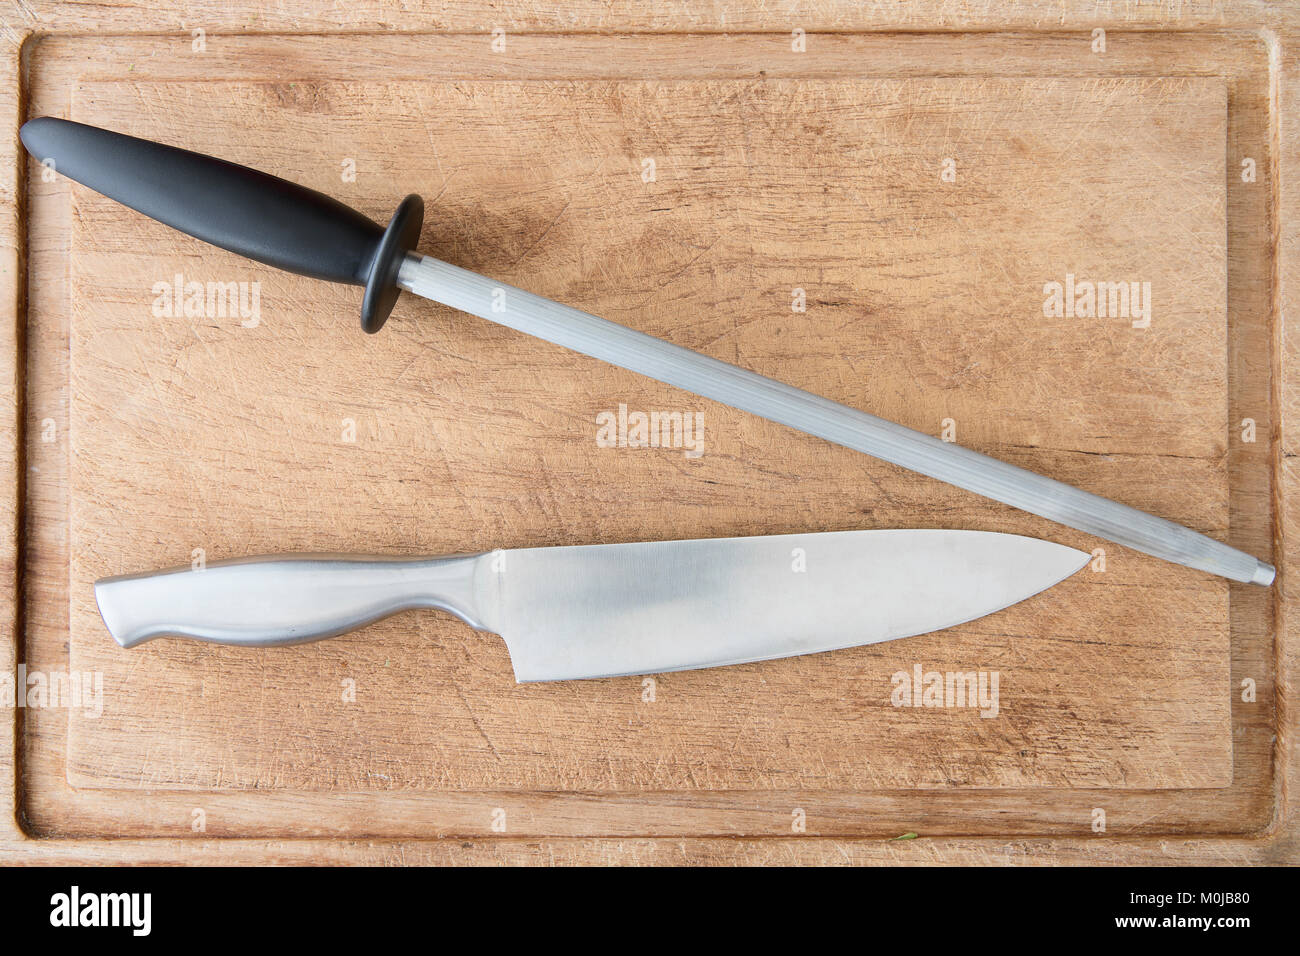 Messer und honen Stahl auf schneidebrett von oben gesehen. Stockfoto